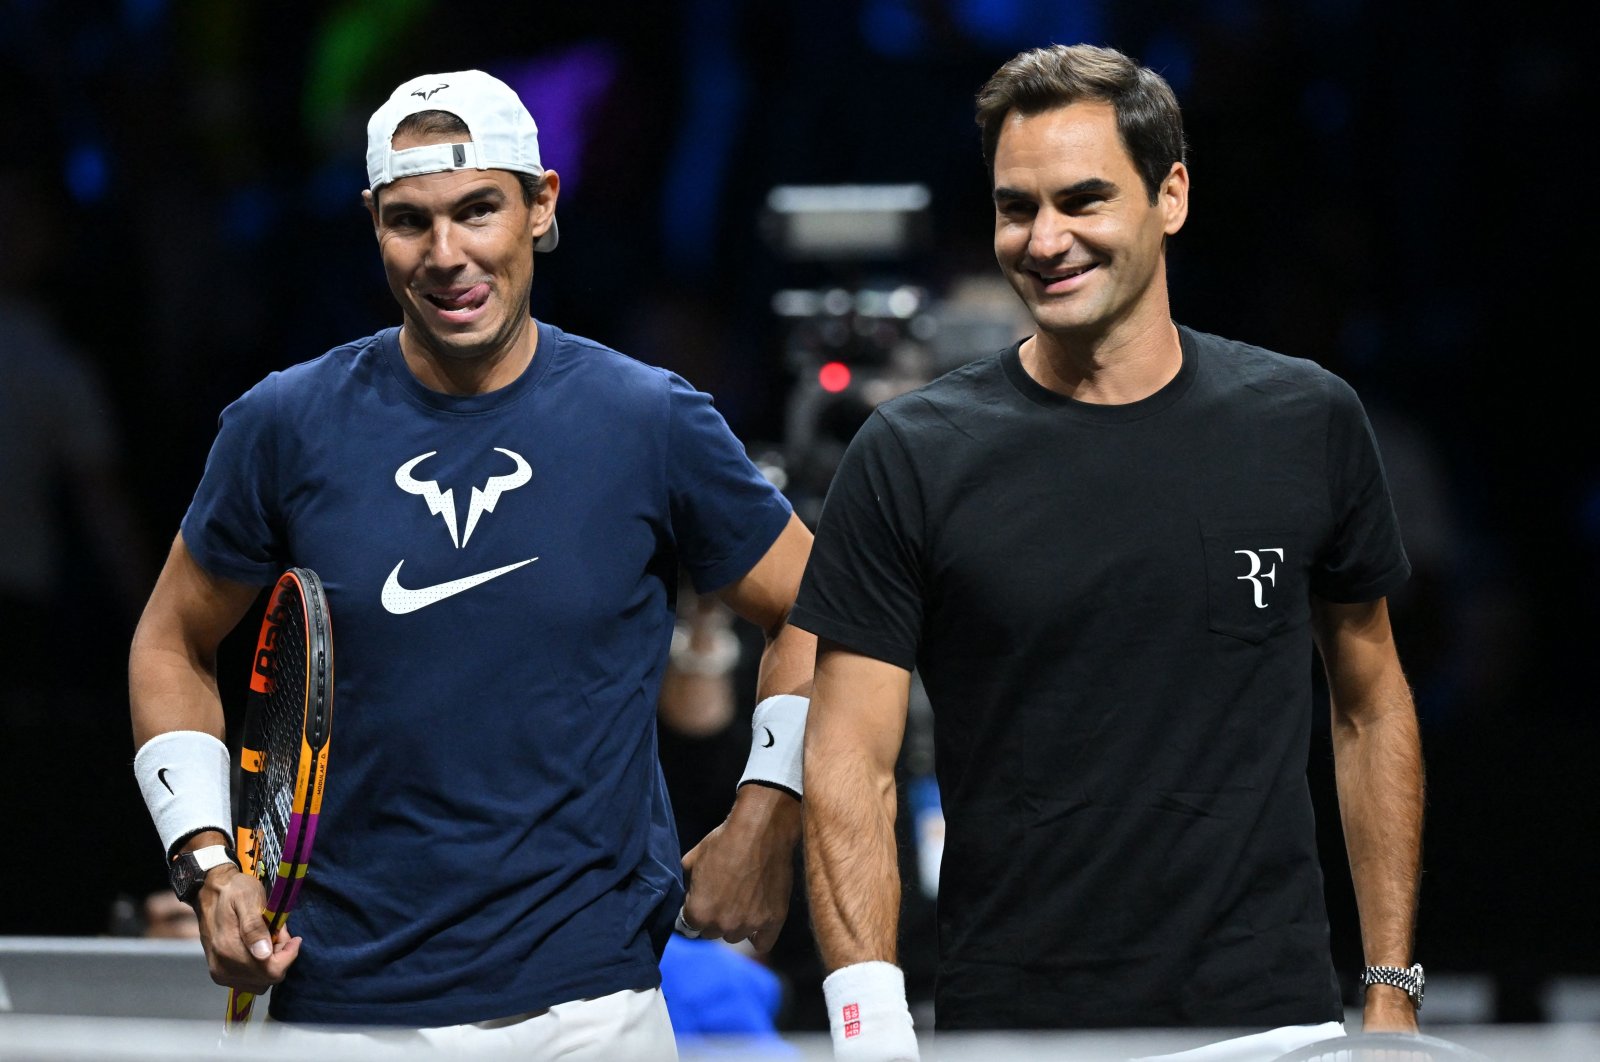 Federer bekerja sama dengan Nadal di Laver Cup untuk pertandingan perpisahan